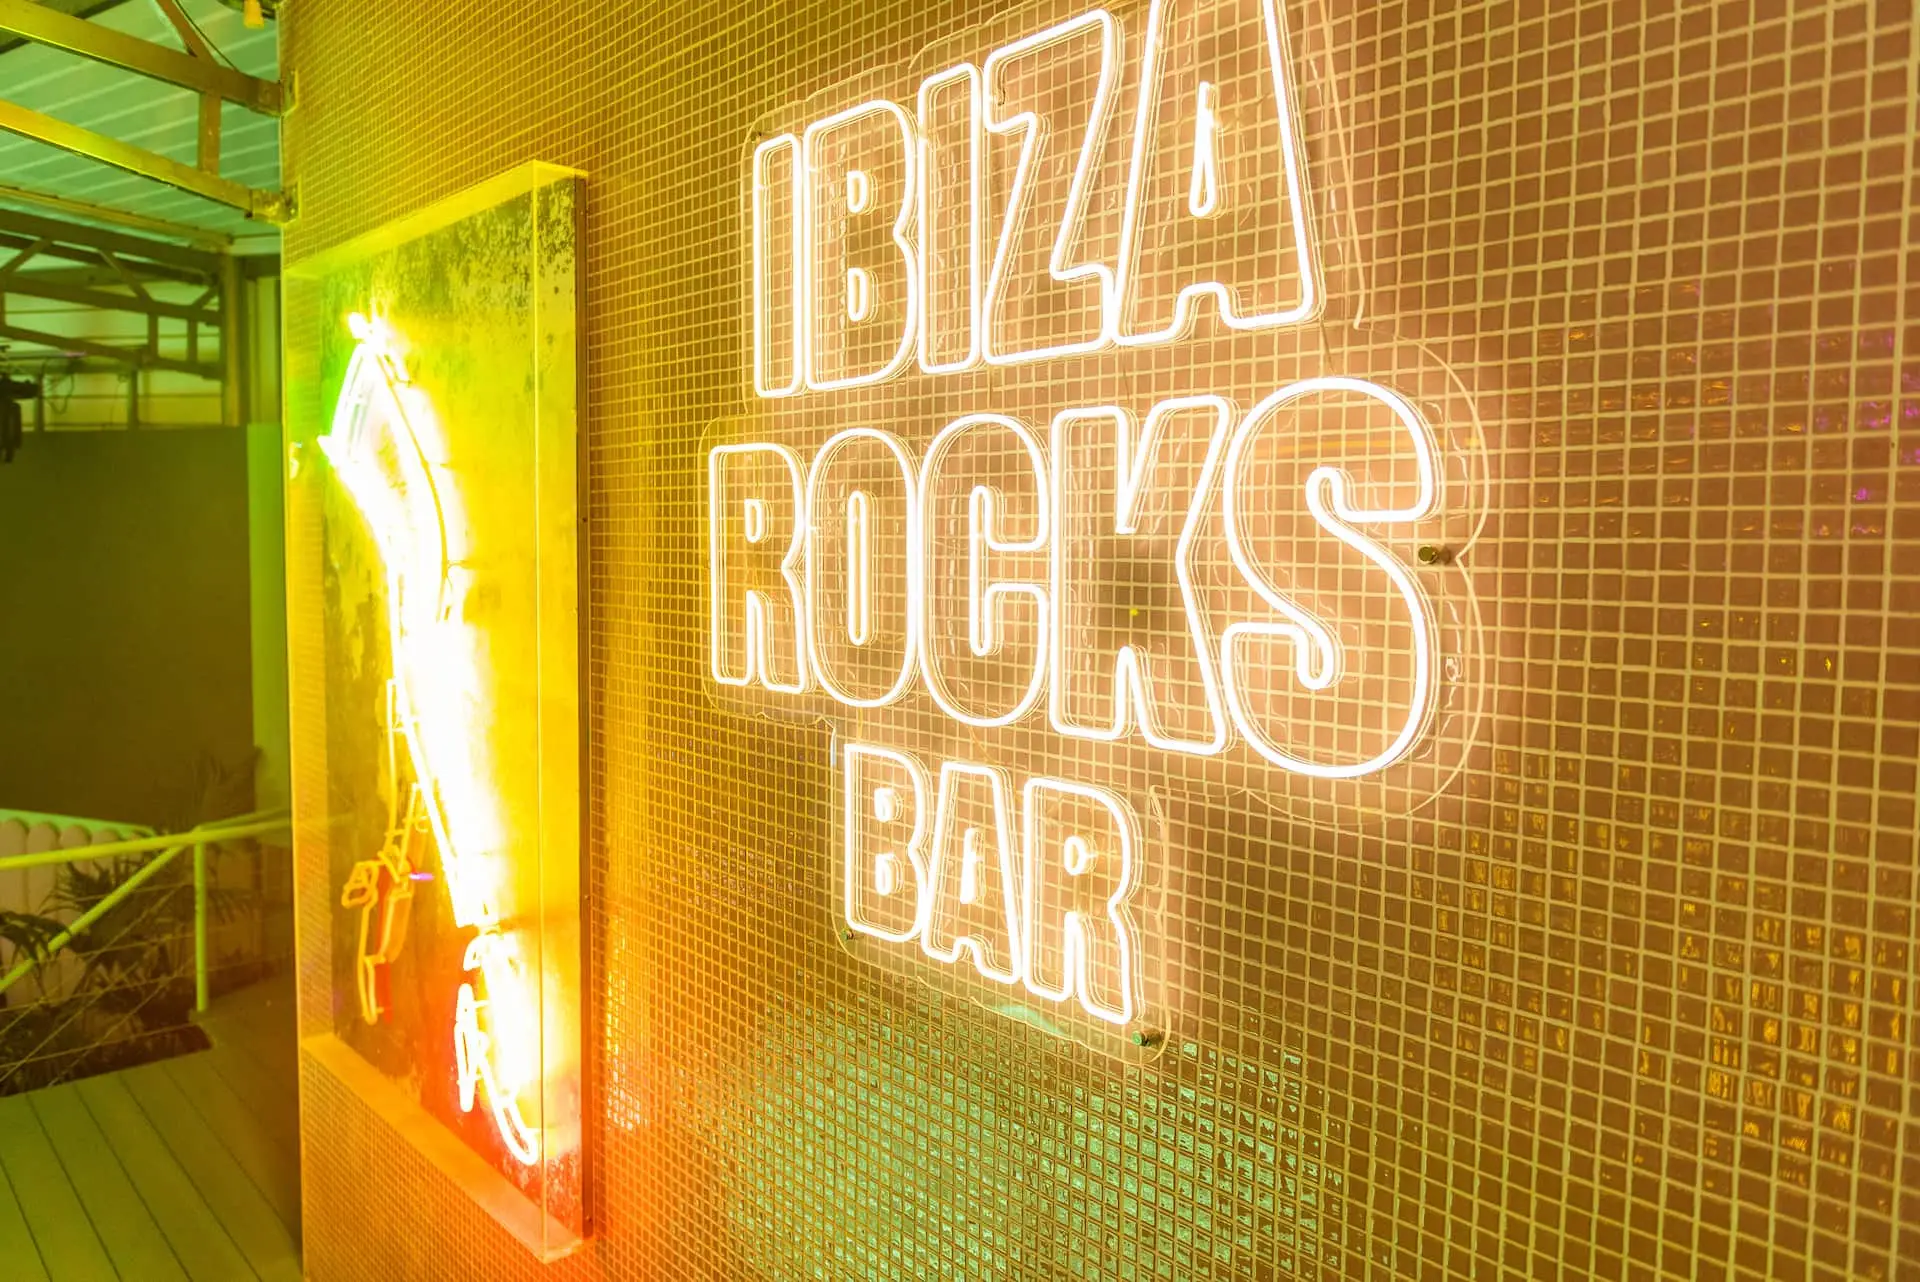 Ibiza-Rocks-Bar_Sofia-Gomez-Fonzo-353